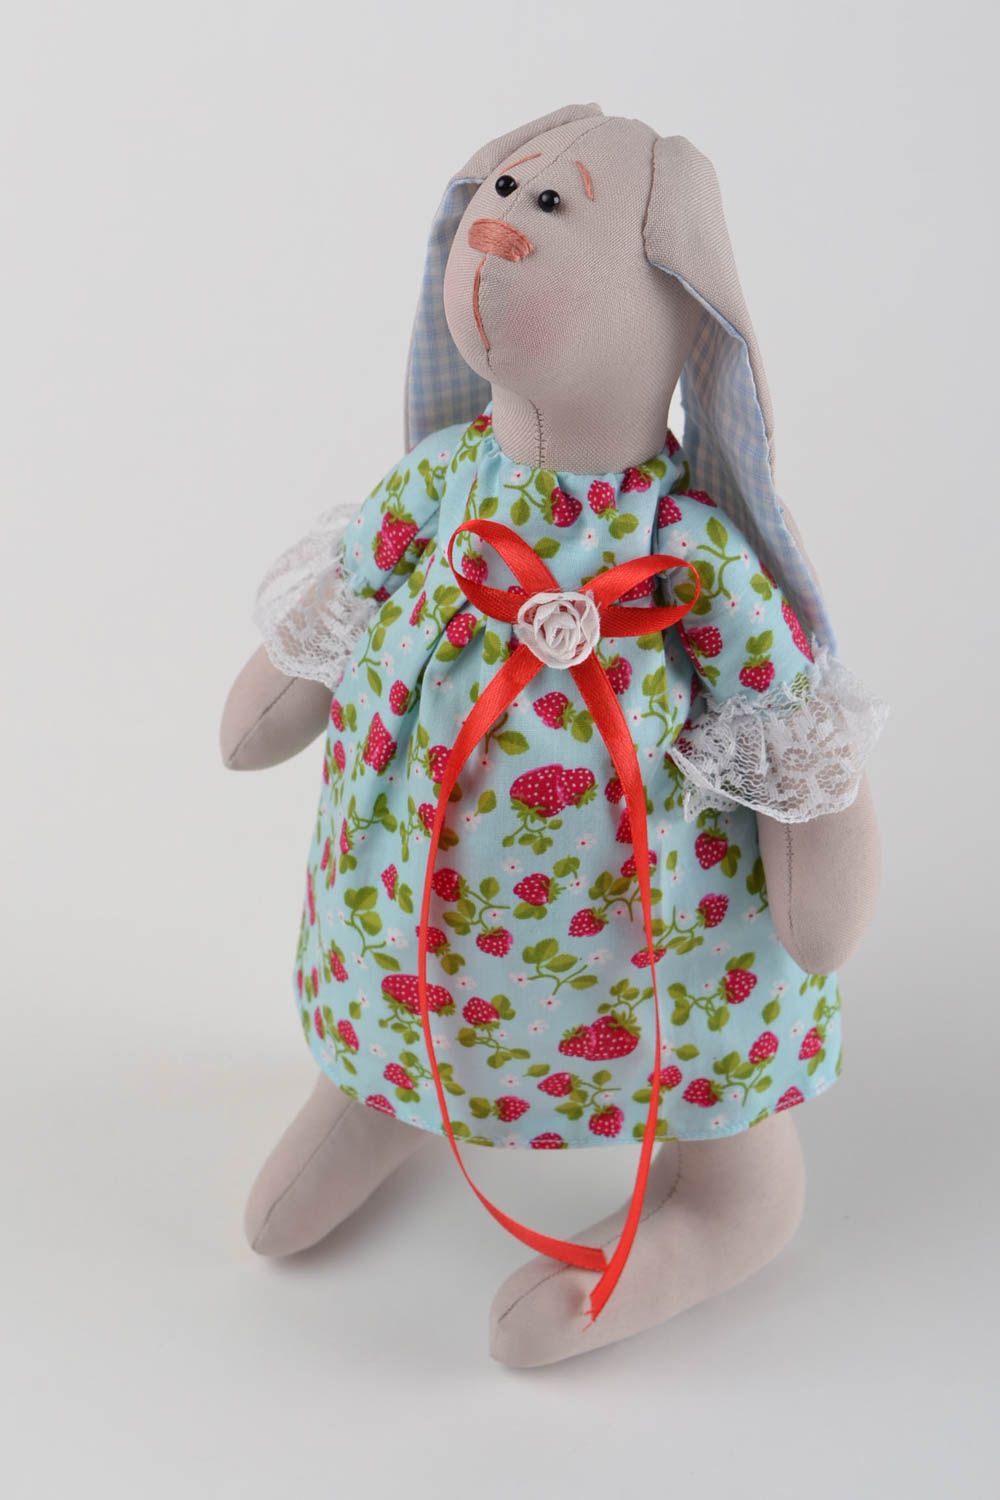 Мягкий зайчик в платьице хенд мейд интерьерная игрушка для декора подарок фото 3